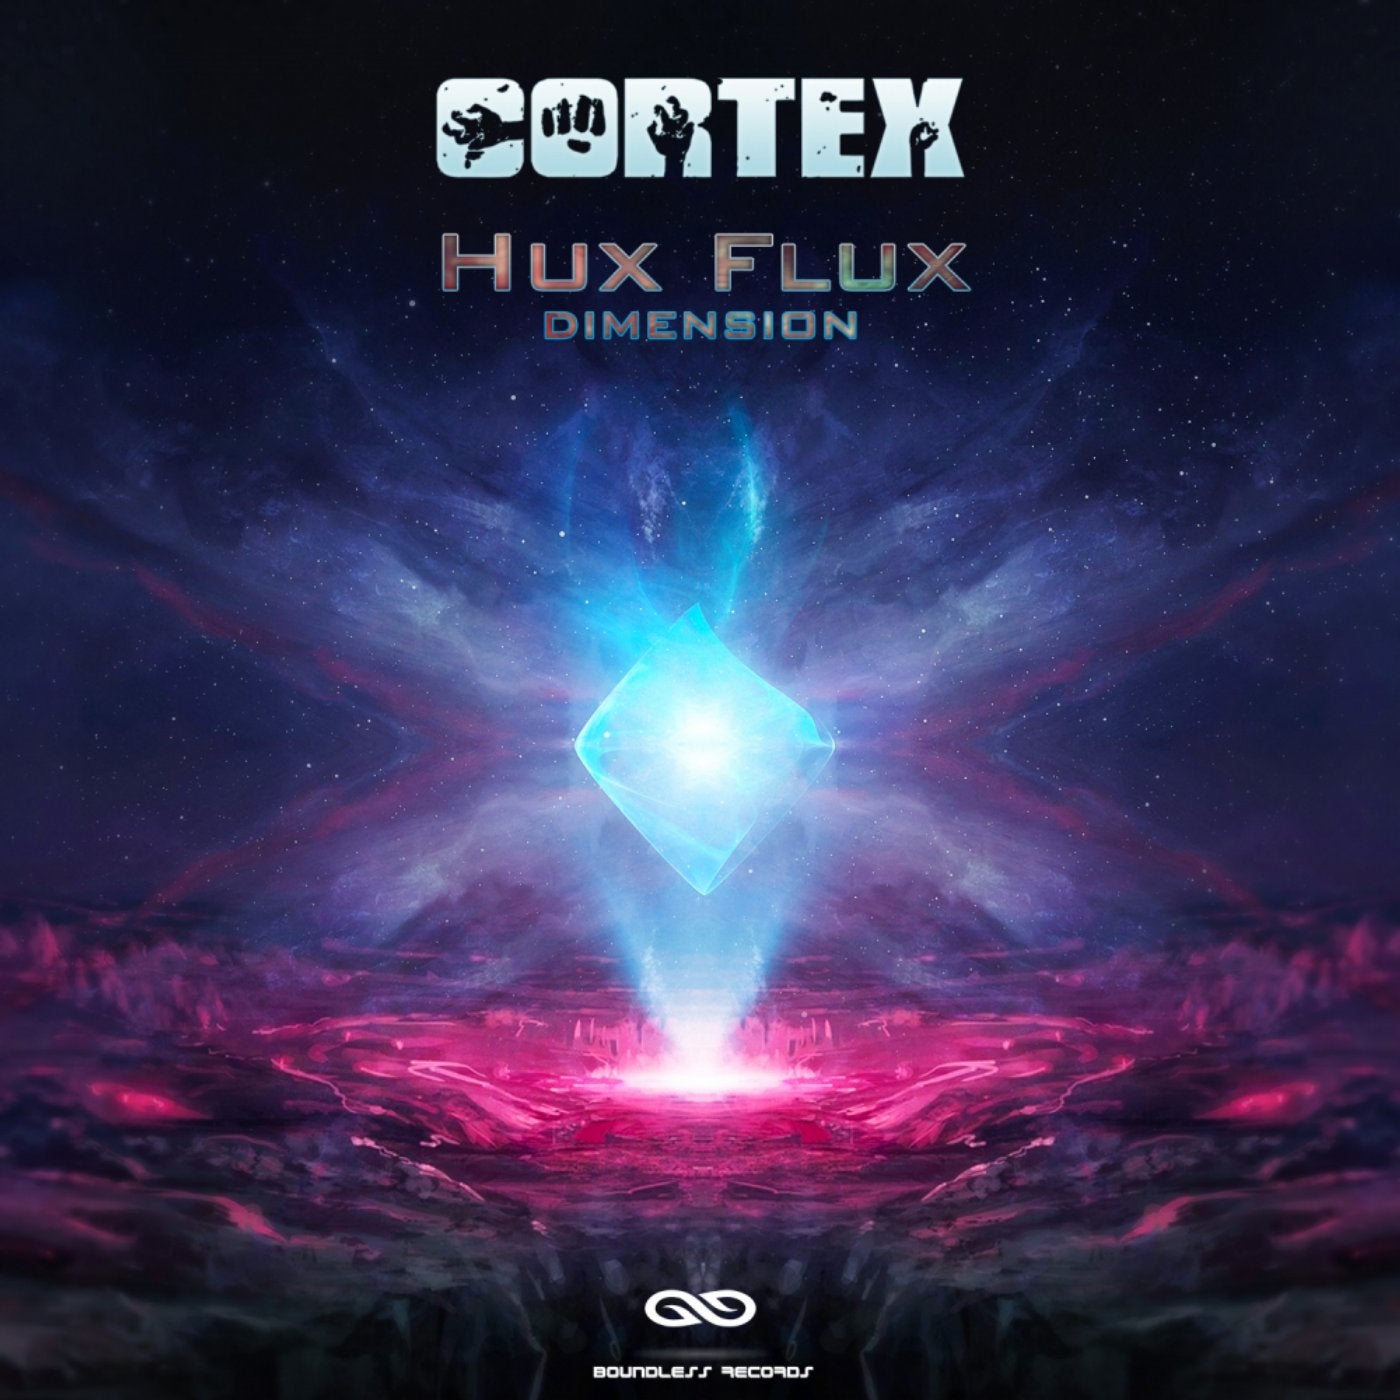 Hux Flux Dimension